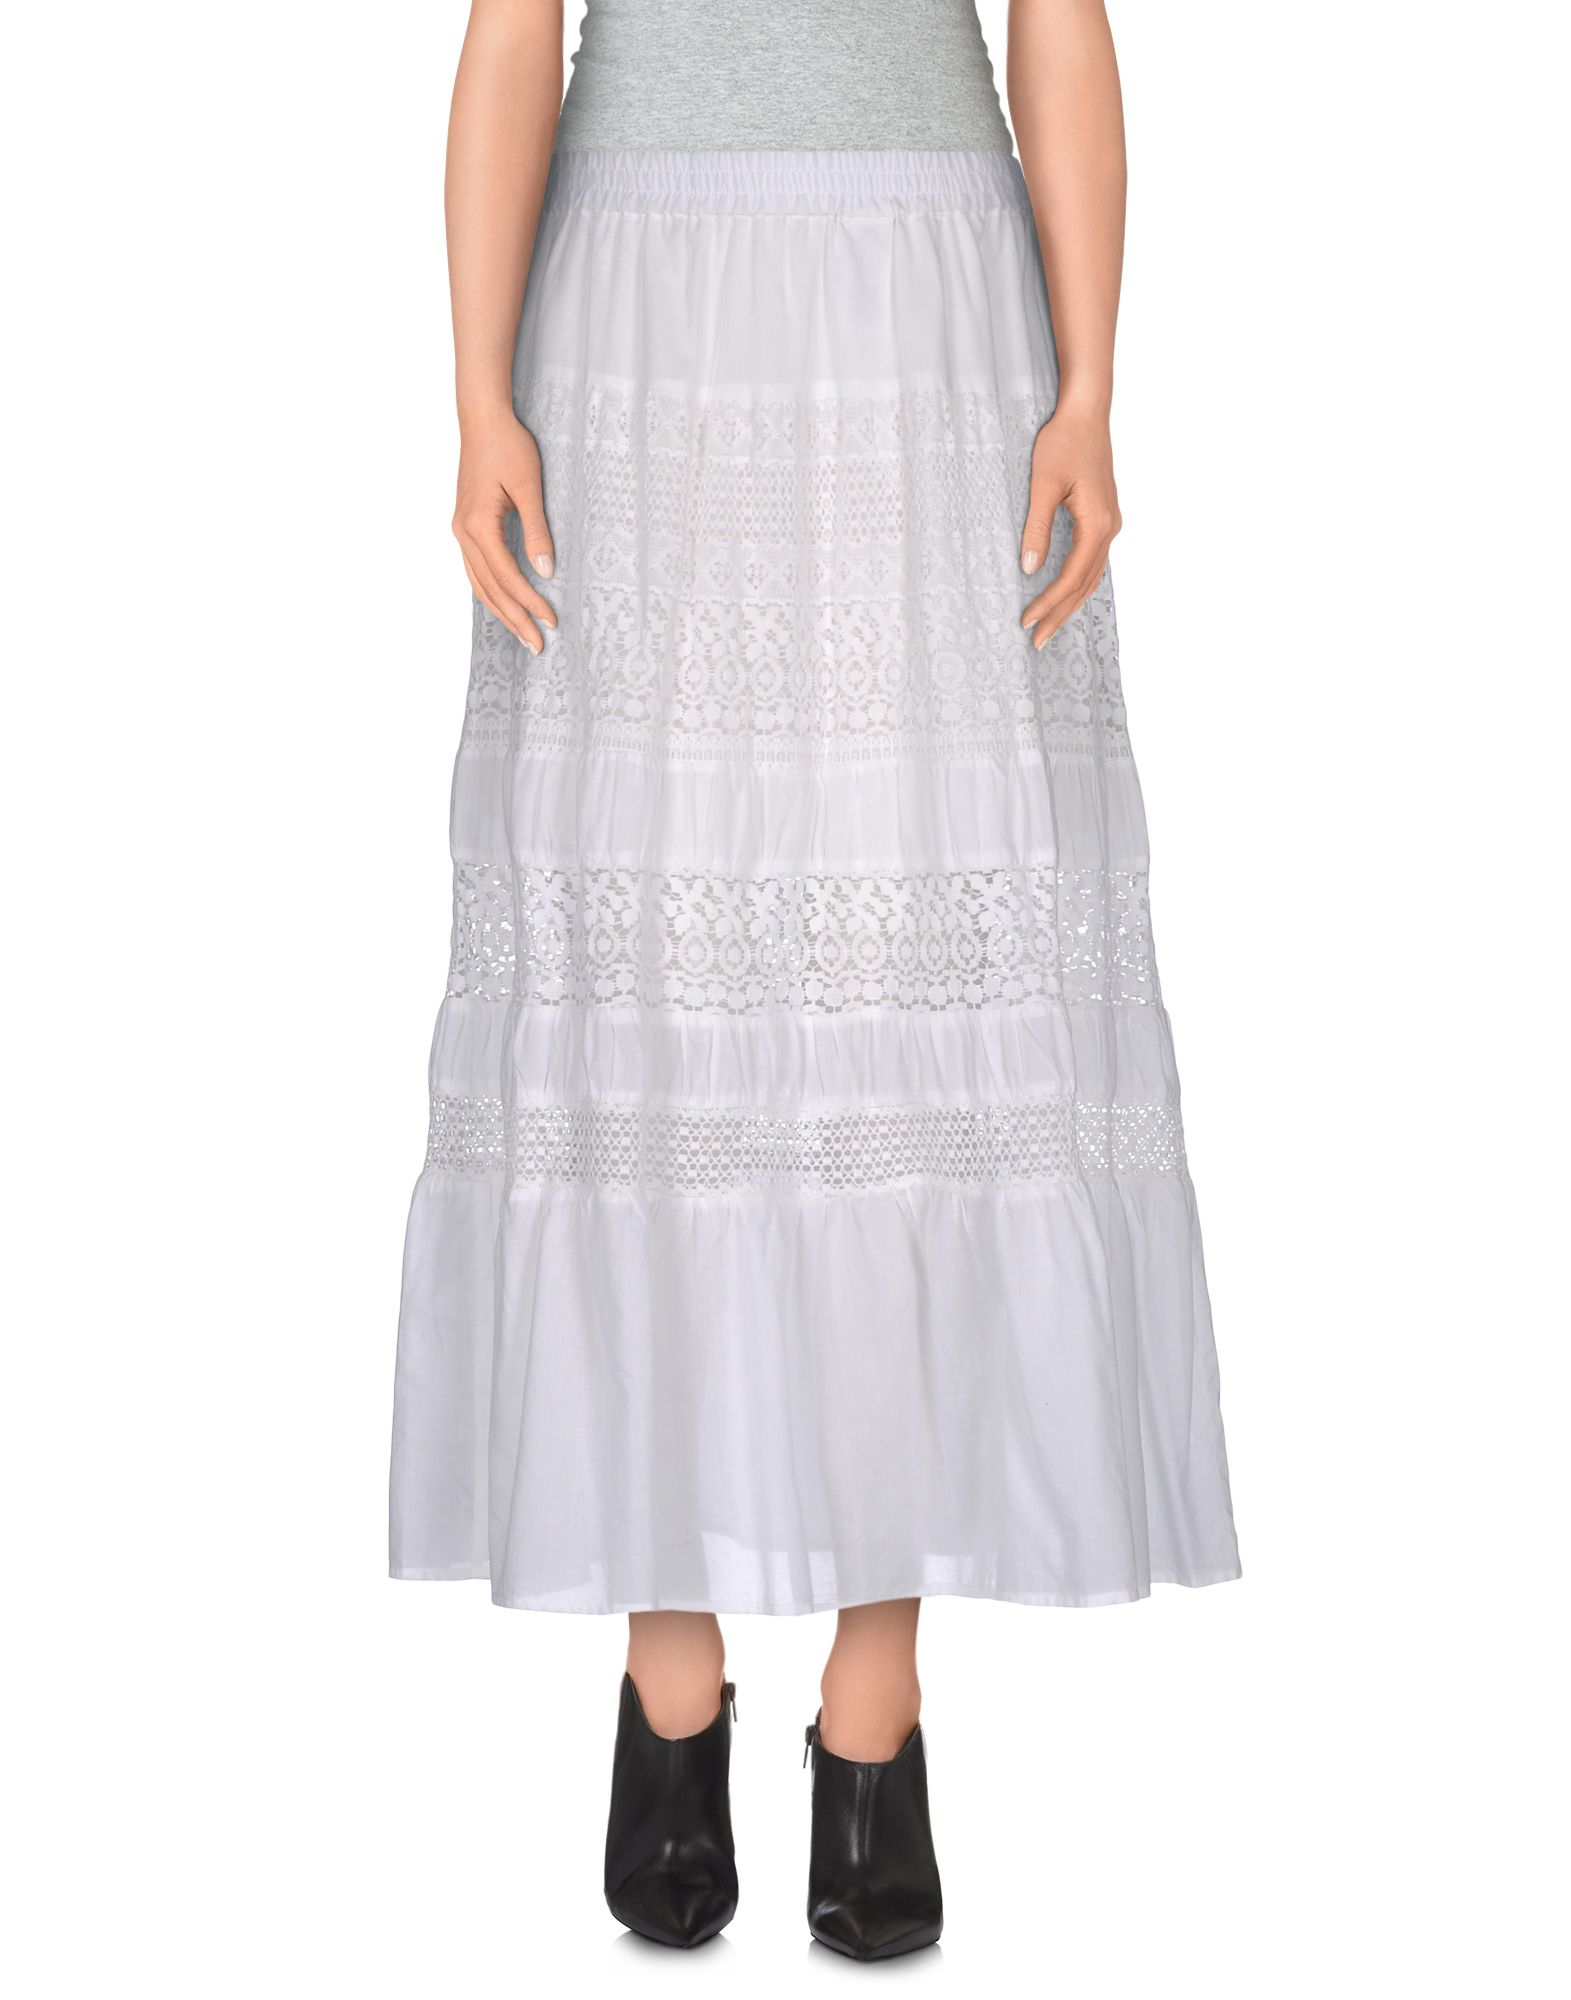 Lyst - Michael Michael Kors 3/4 Length Skirt in White